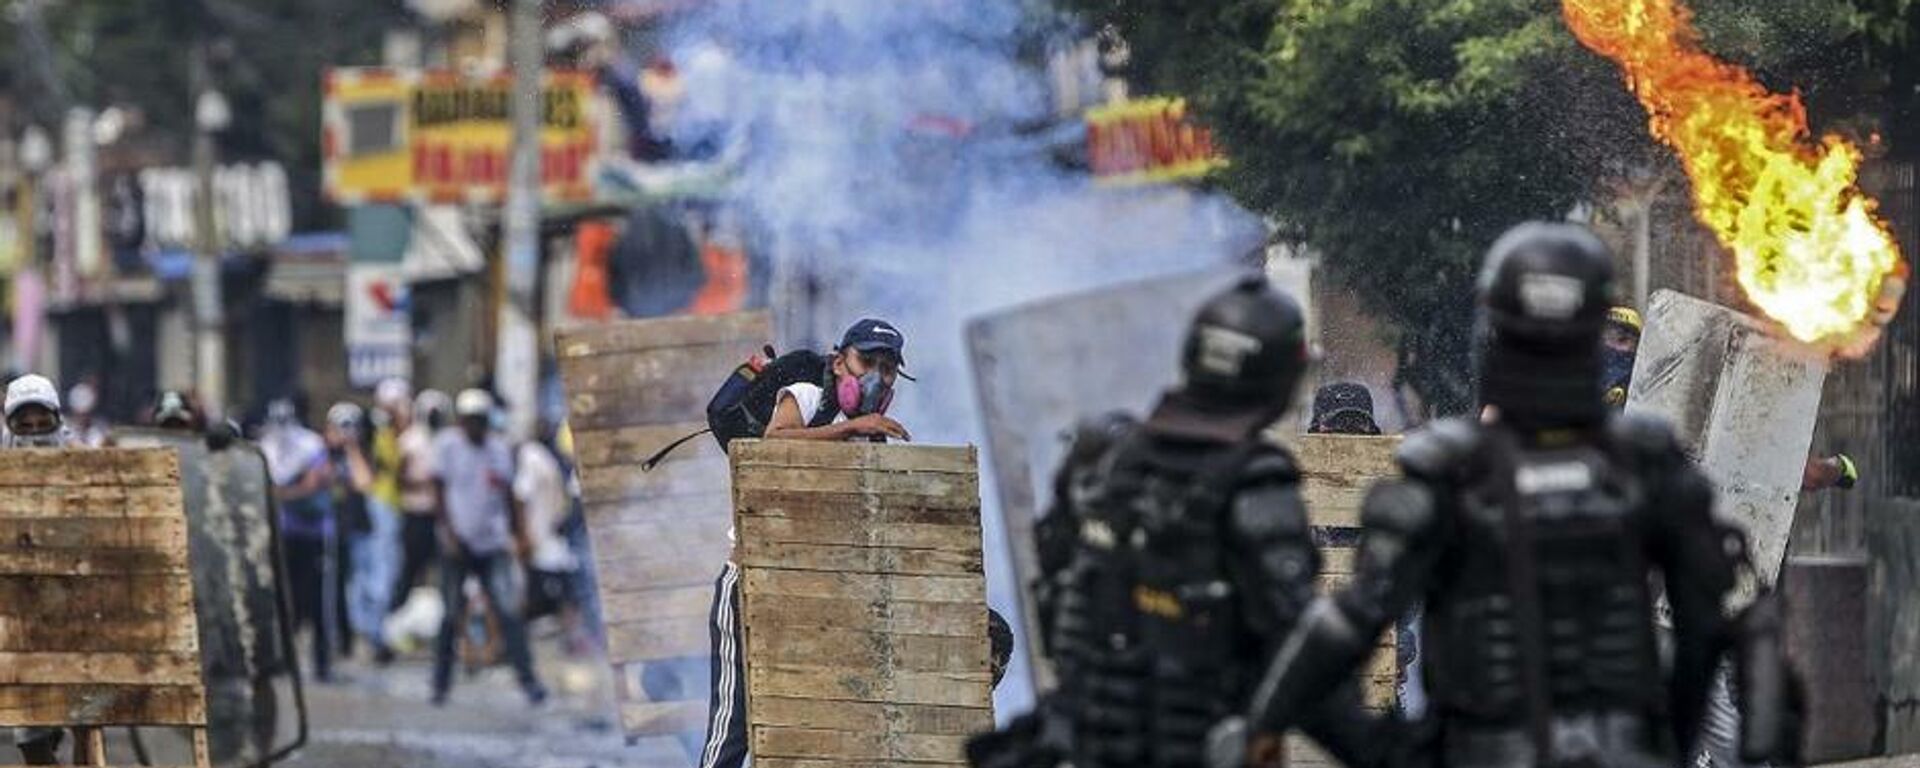 Disturbios contra la reforma tributaria en Cali (Colombia), el 29 de abril del 2021 - Sputnik Mundo, 1920, 06.05.2021